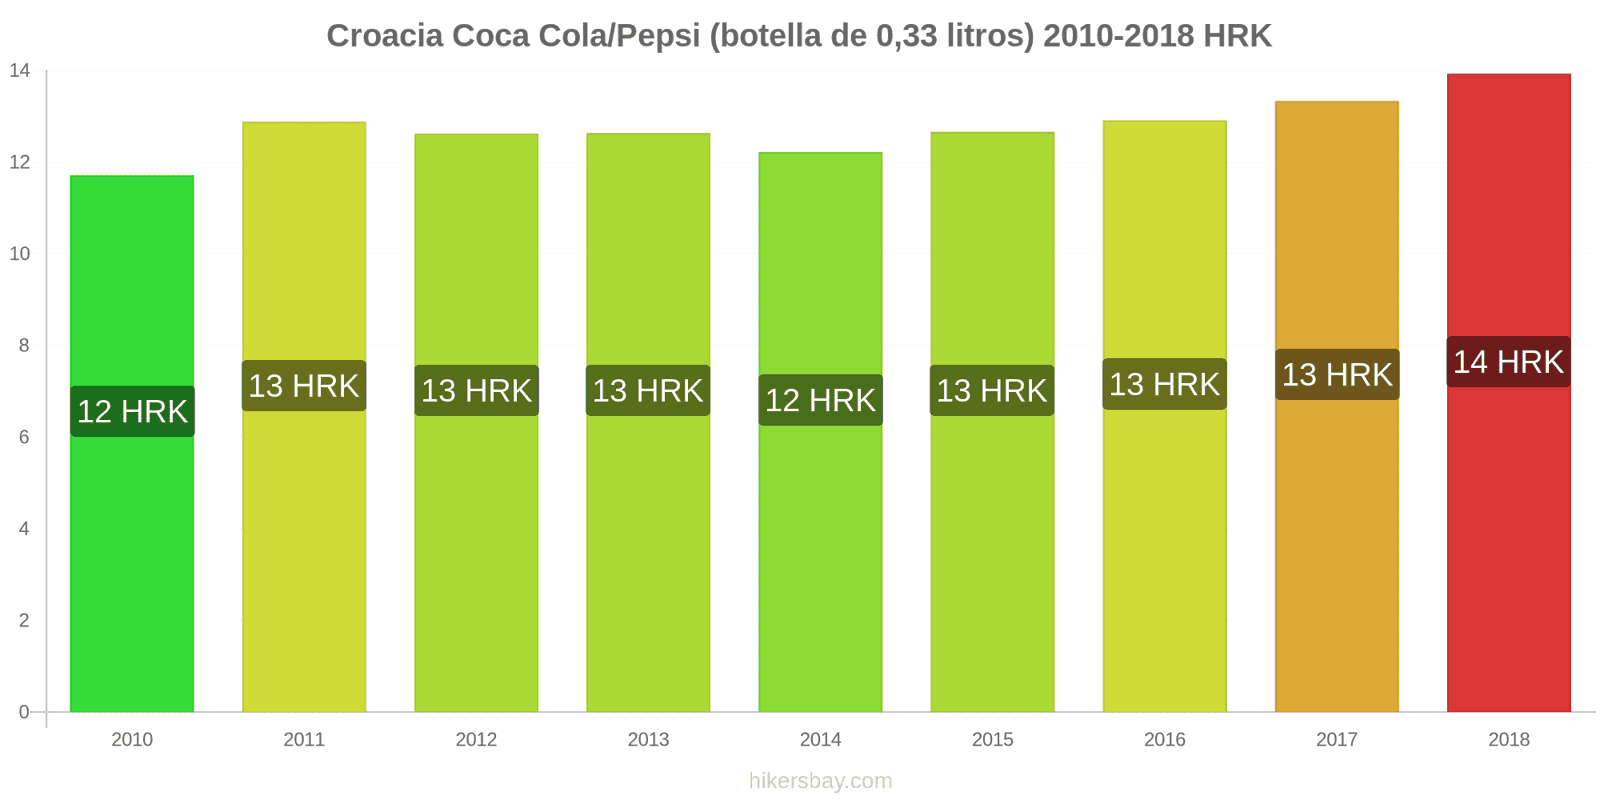 Croacia cambios de precios Coca-Cola/Pepsi (botella de 0.33 litros) hikersbay.com